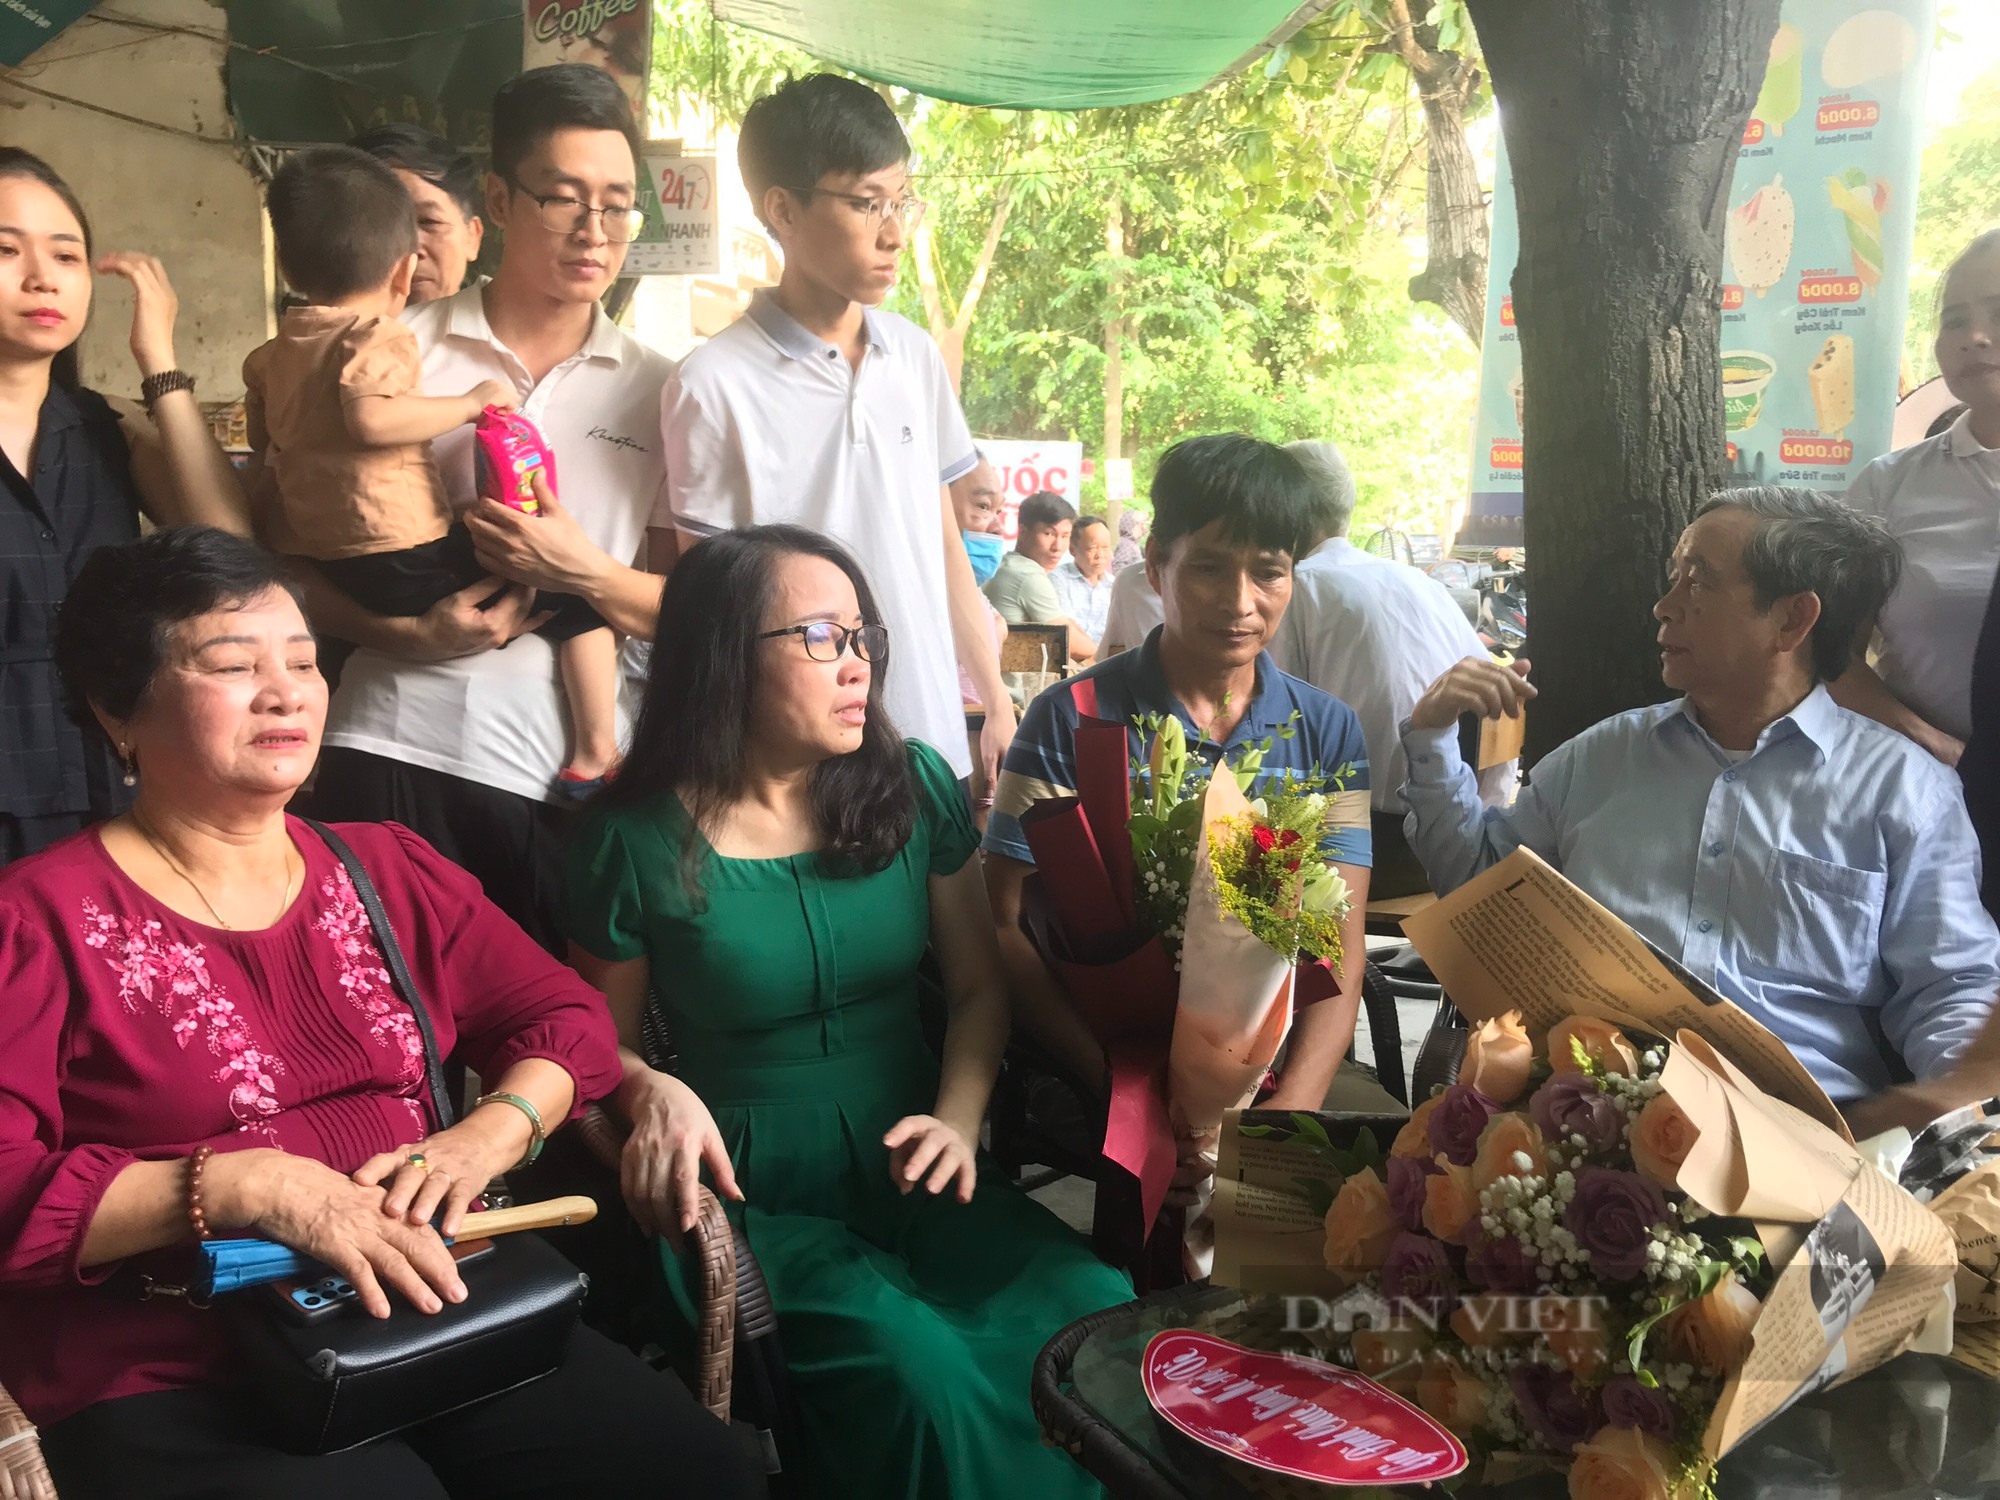 Ngày ra tù, cô giáo Lê Thị Dung bật khóc khi gặp lại chồng con, bạn bè - Ảnh 4.